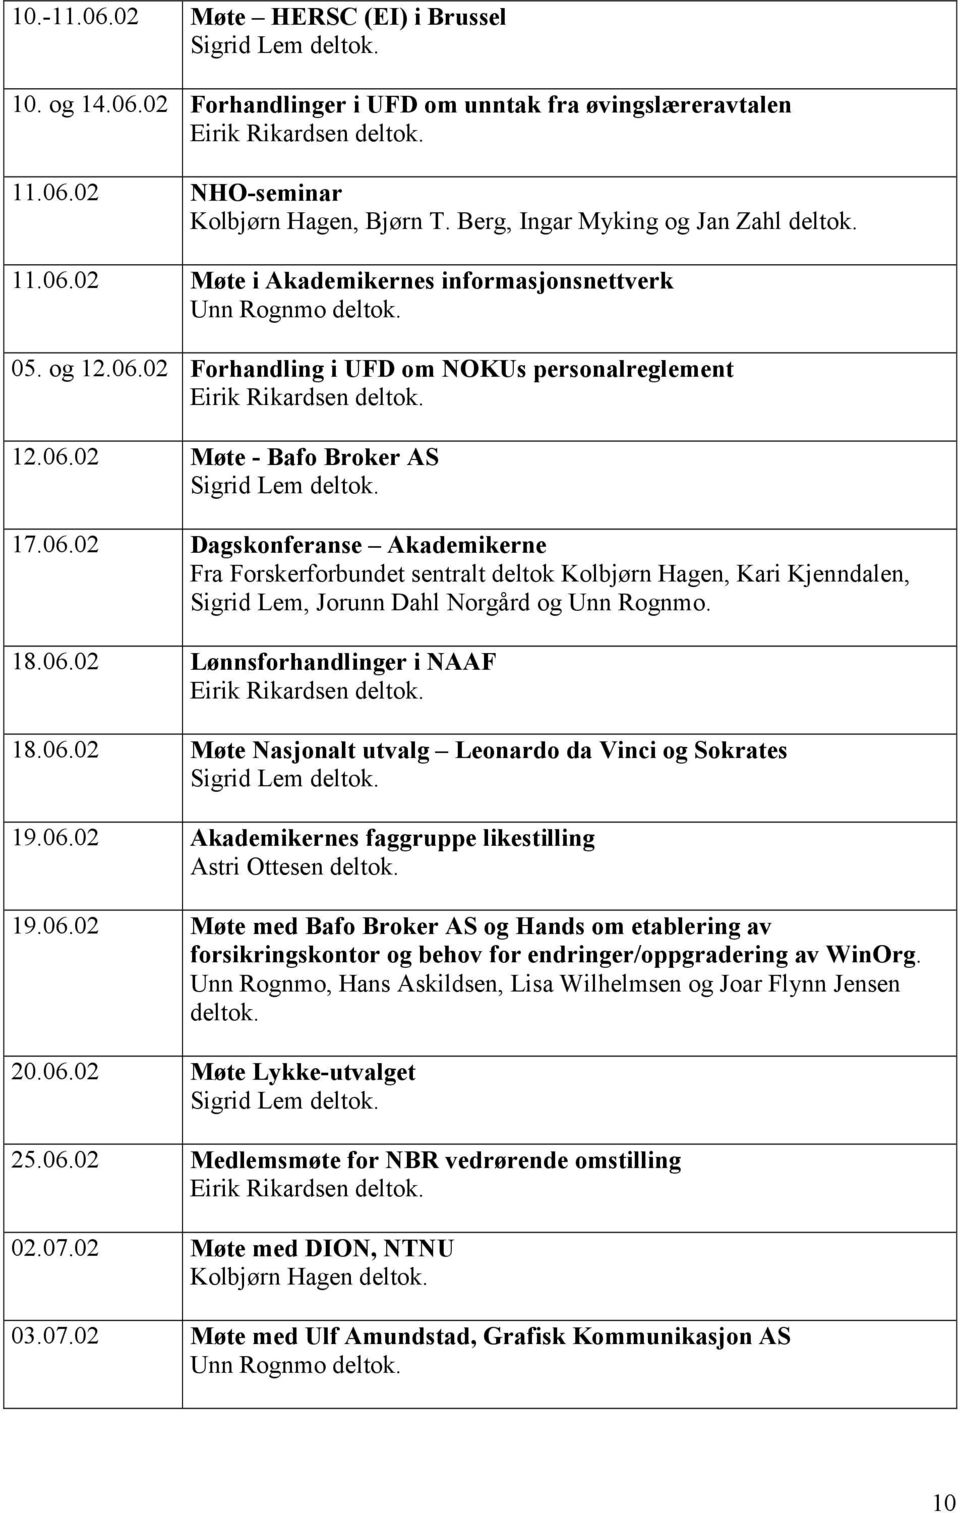 06.02 Dagskonferanse Akademikerne Fra Forskerforbundet sentralt deltok Kolbjørn Hagen, Kari Kjenndalen, Sigrid Lem, Jorunn Dahl Norgård og Unn Rognmo. 18.06.02 Lønnsforhandlinger i NAAF Eirik Rikardsen deltok.